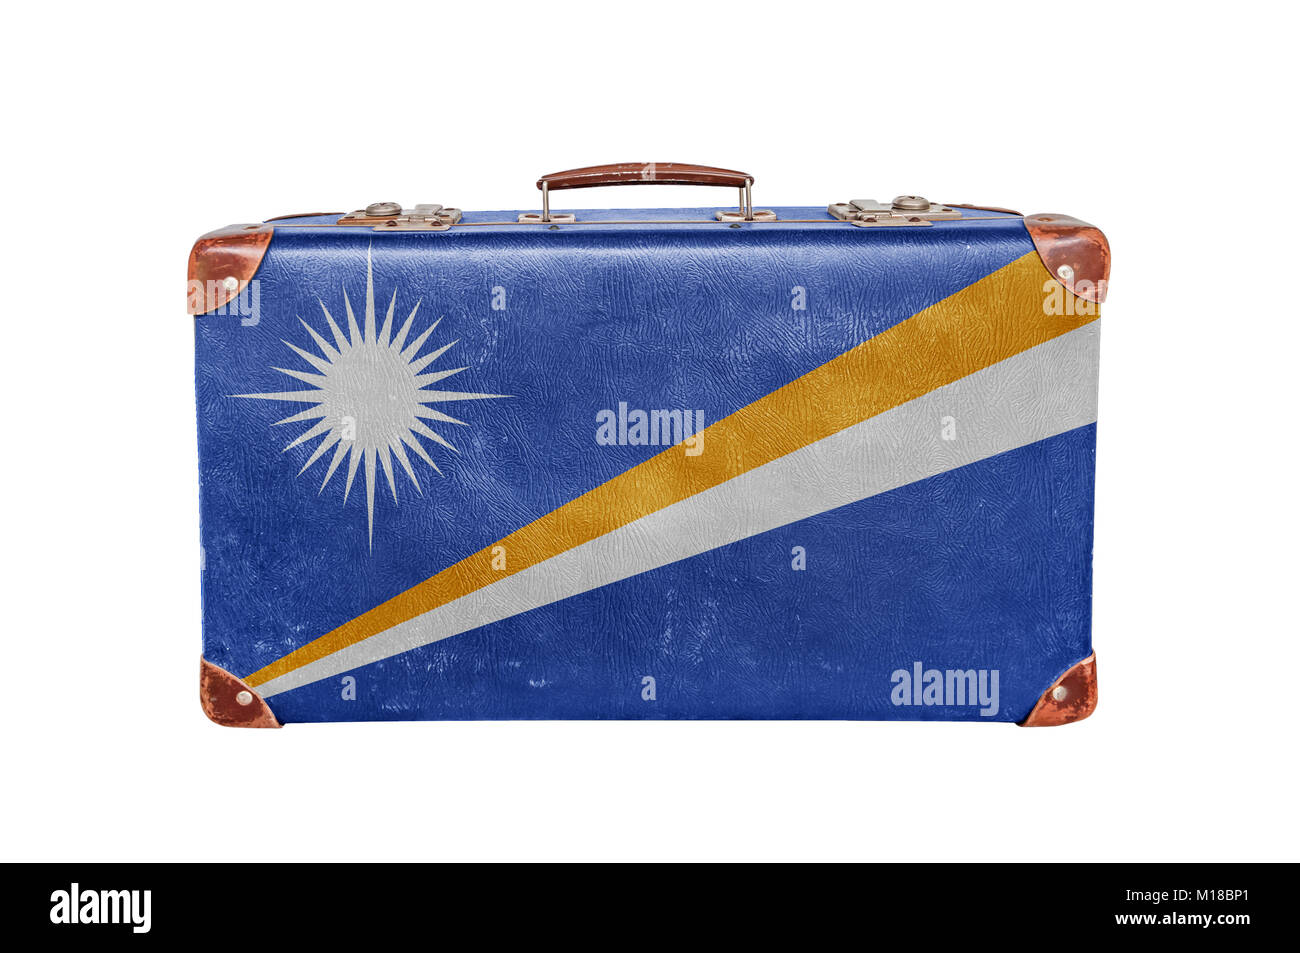 Vintage Koffer mit Marshall Flagge Inseln isoliert auf weißem Hintergrund  Stockfotografie - Alamy